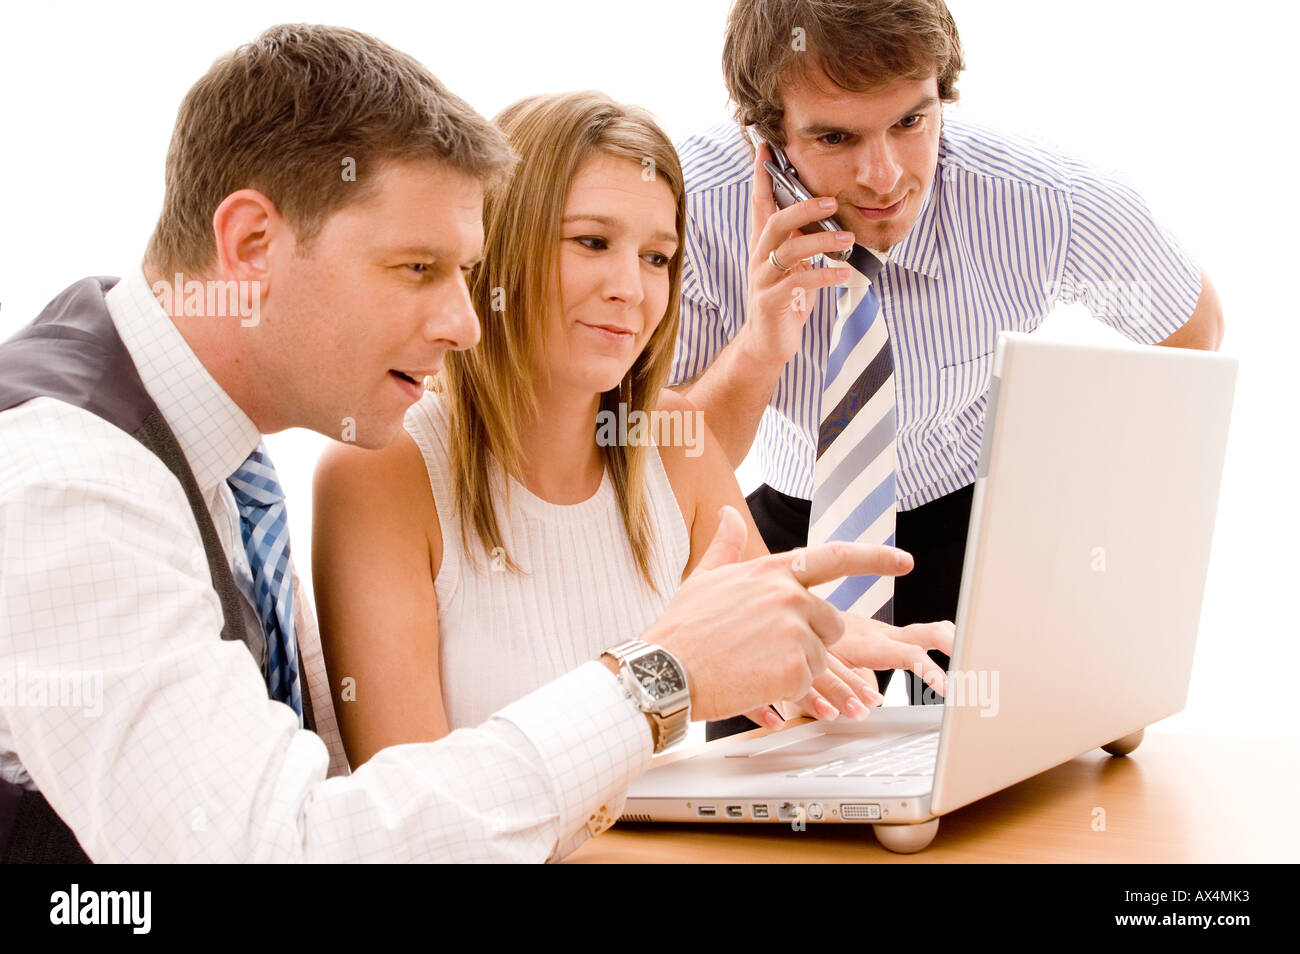 Ein Team von drei Werken auf einem Laptopcomputer Stockfoto